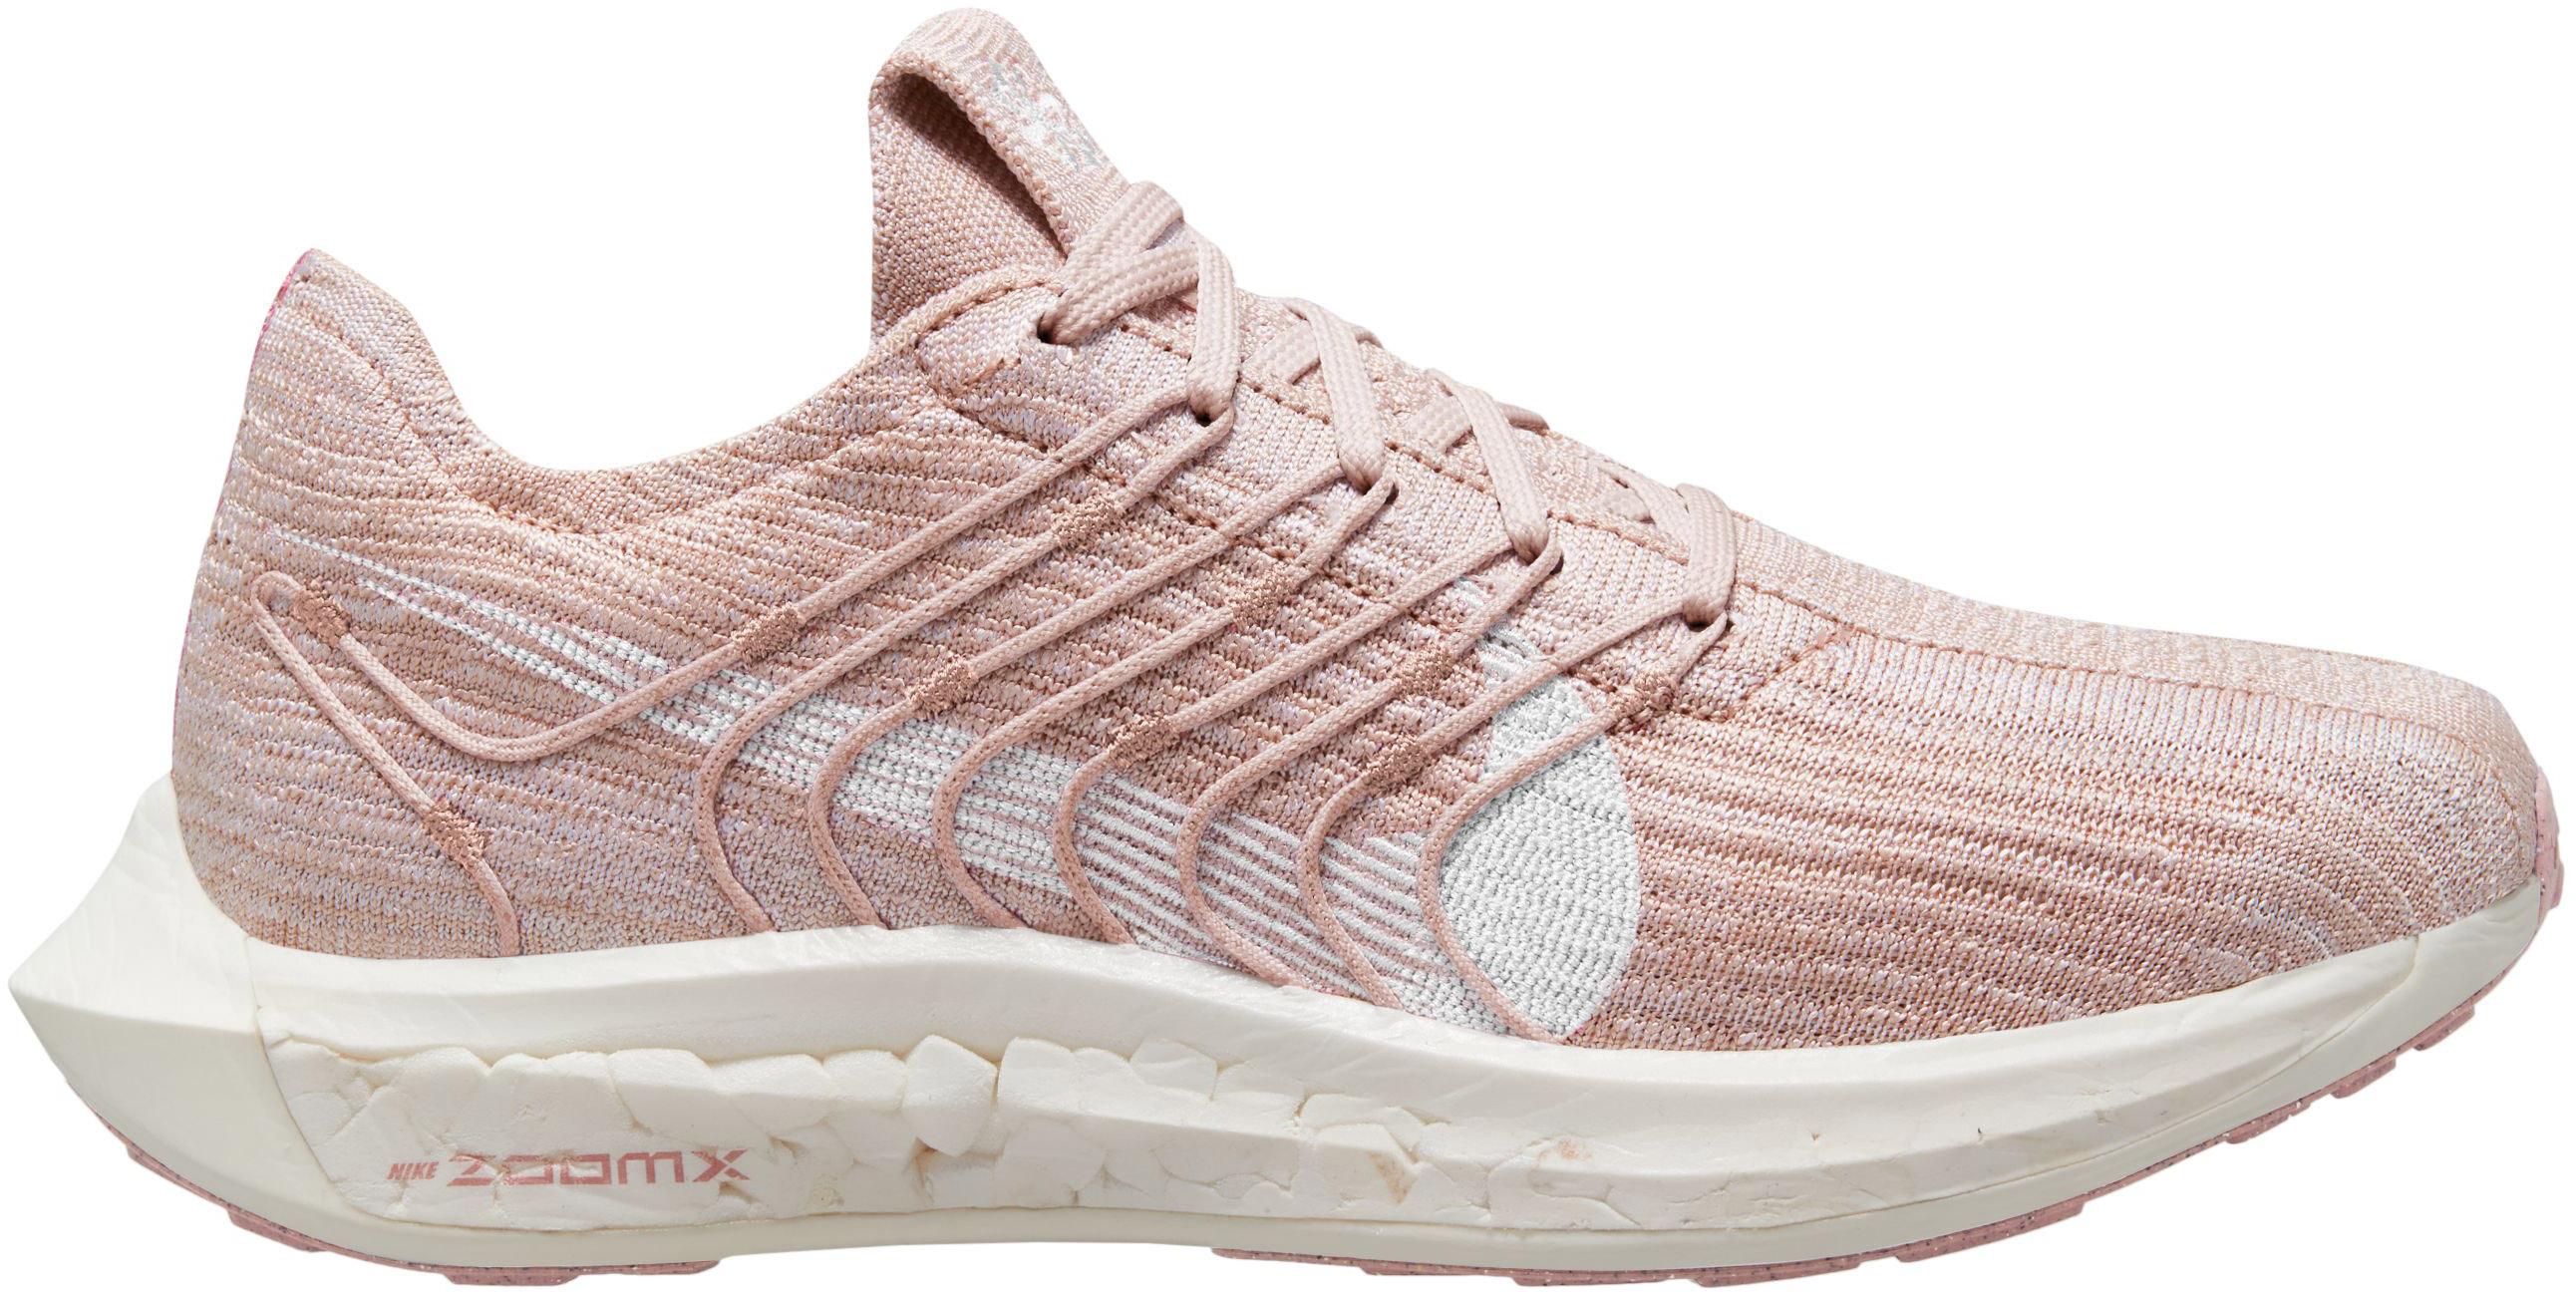 Nike PEGASUS TURBO NEXT NATURE Laufschuhe Damen pink glaze-white-pink foam im Online Shop von SportScheck